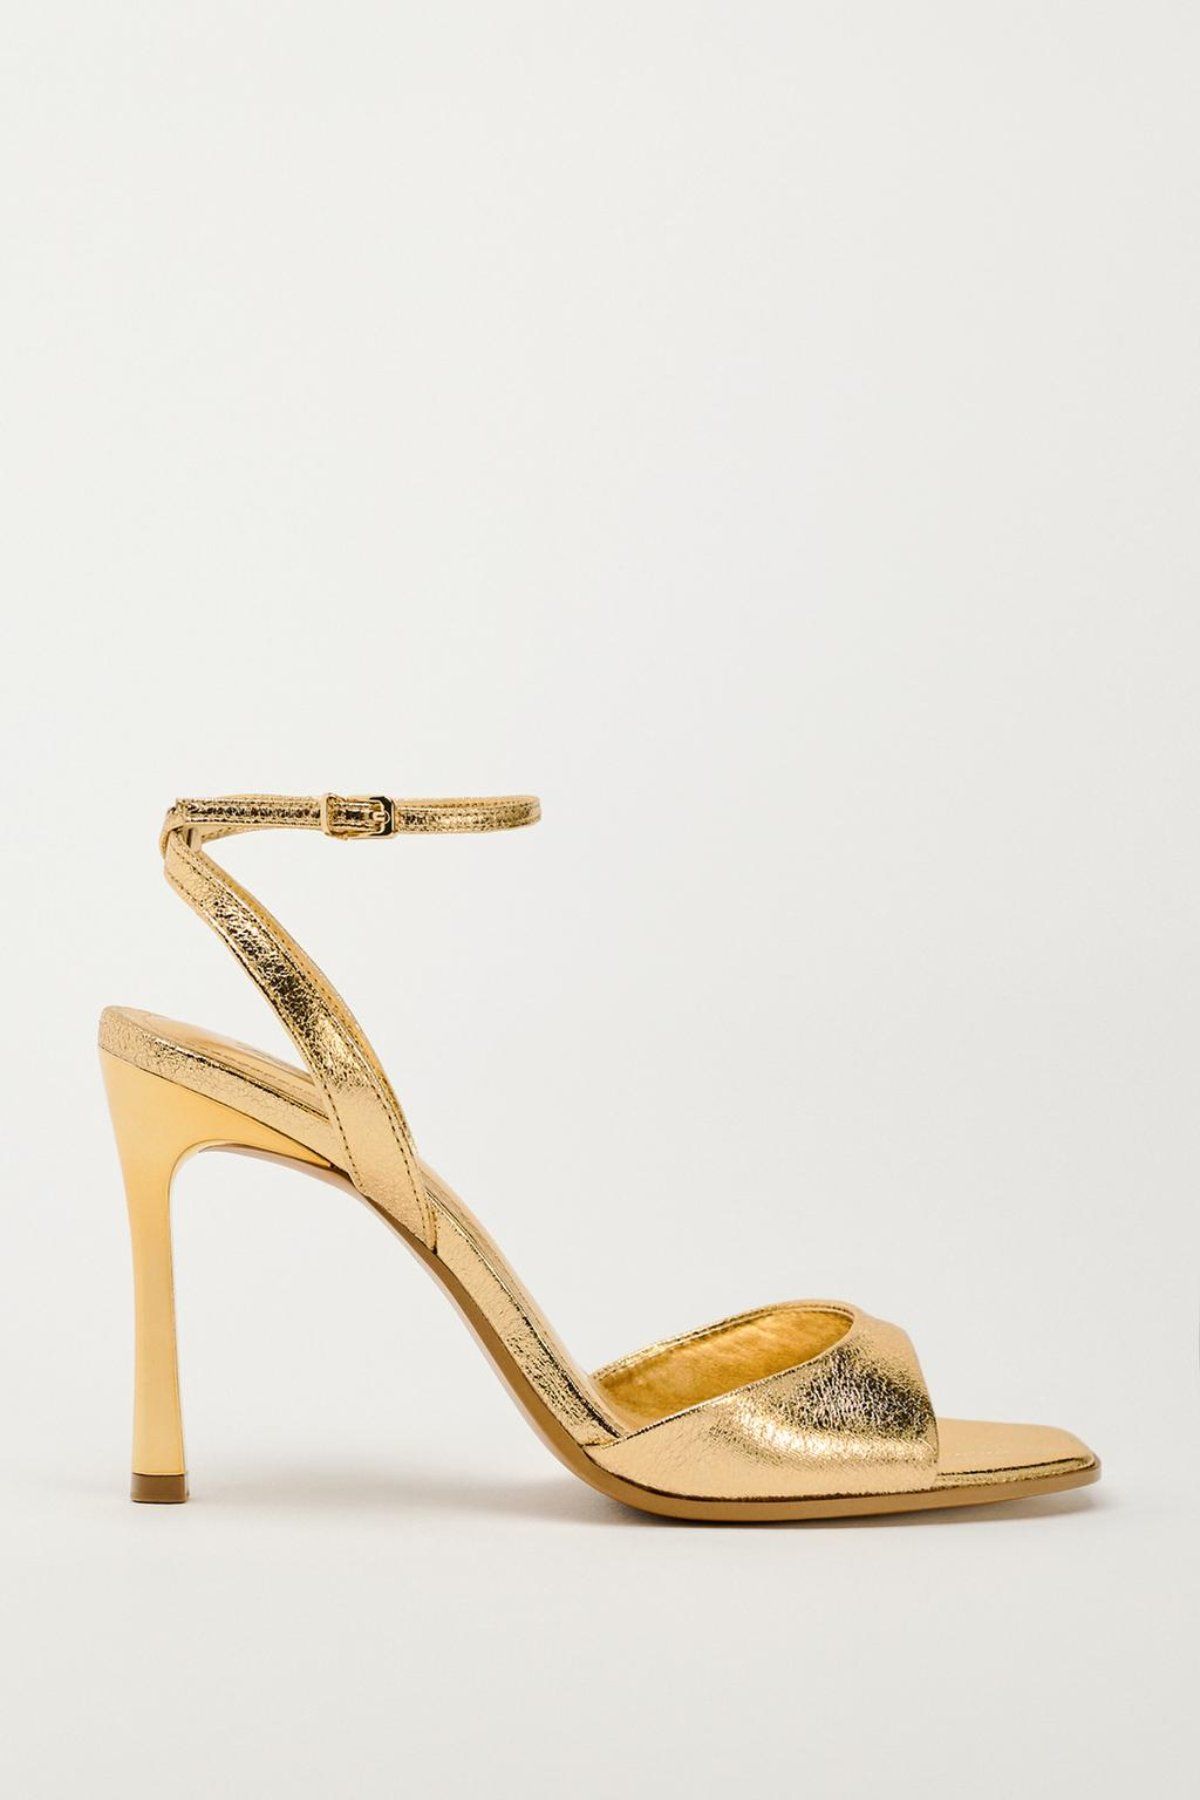 Sandalias doradas Zara